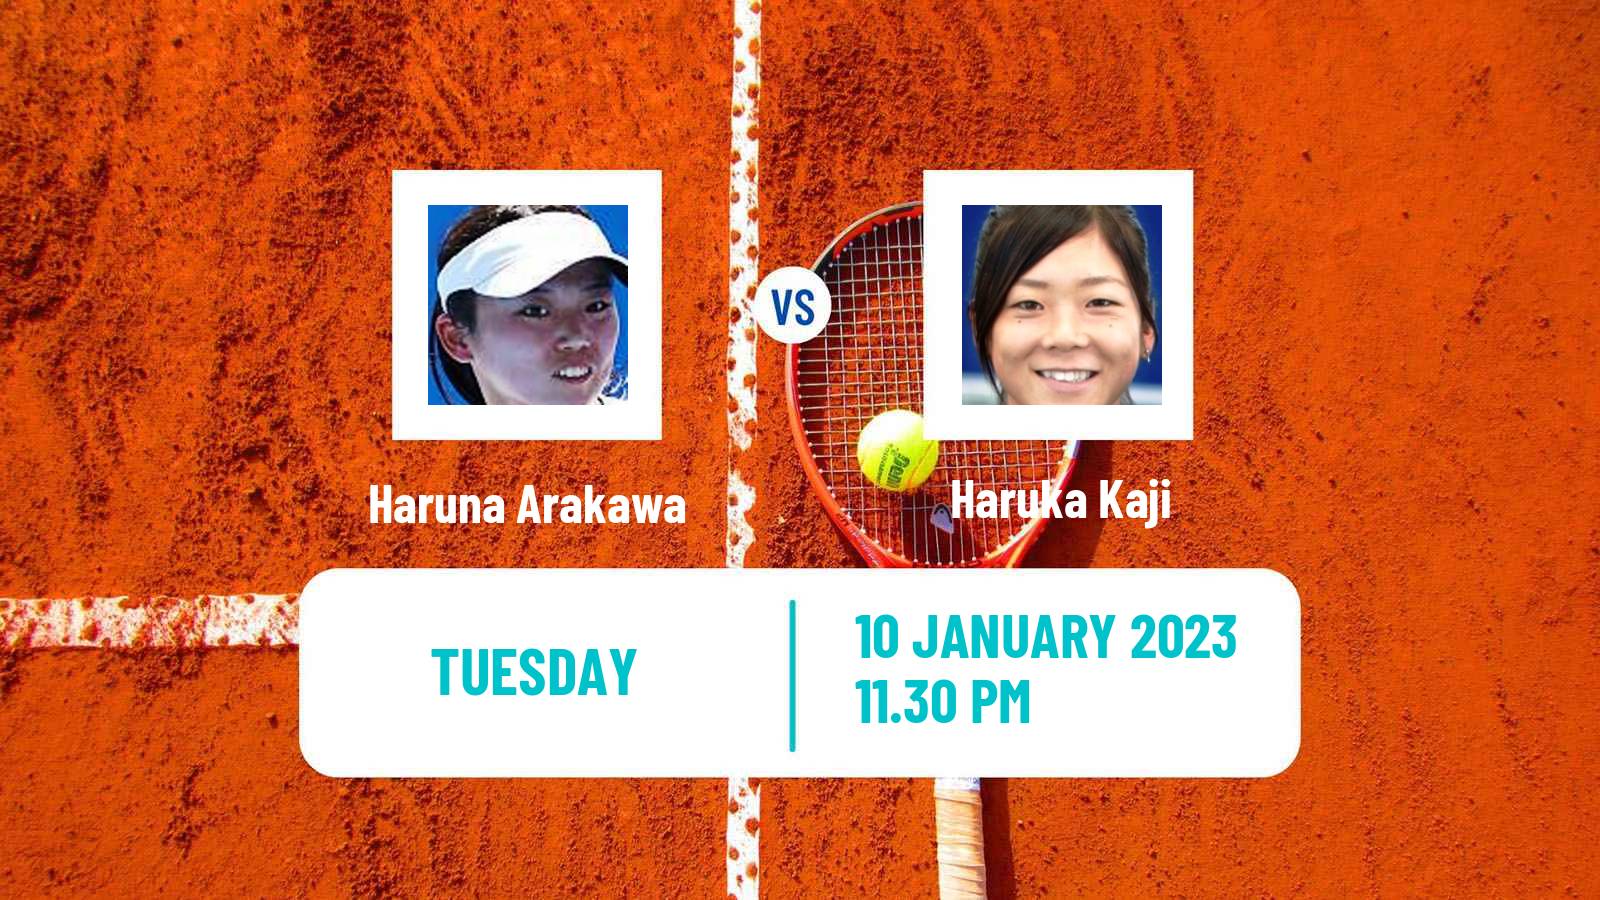 Tennis ITF Tournaments Haruna Arakawa - Haruka Kaji